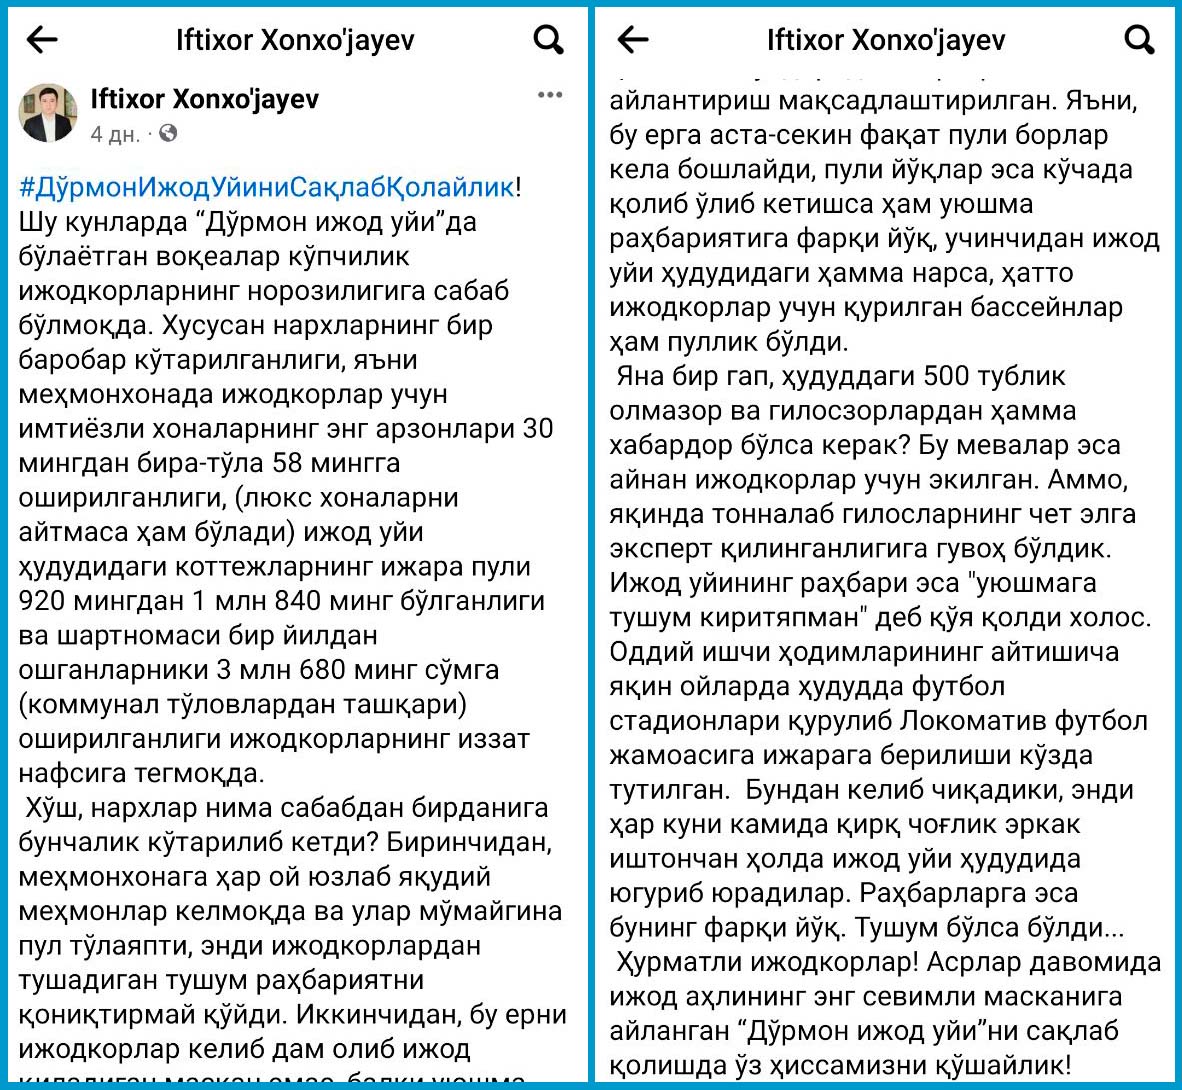 Yozuvchilar uyushmasi a’zosi Iftixor Xonxo‘jayev o‘z Facebook sahifasida e’lon qilgan posti